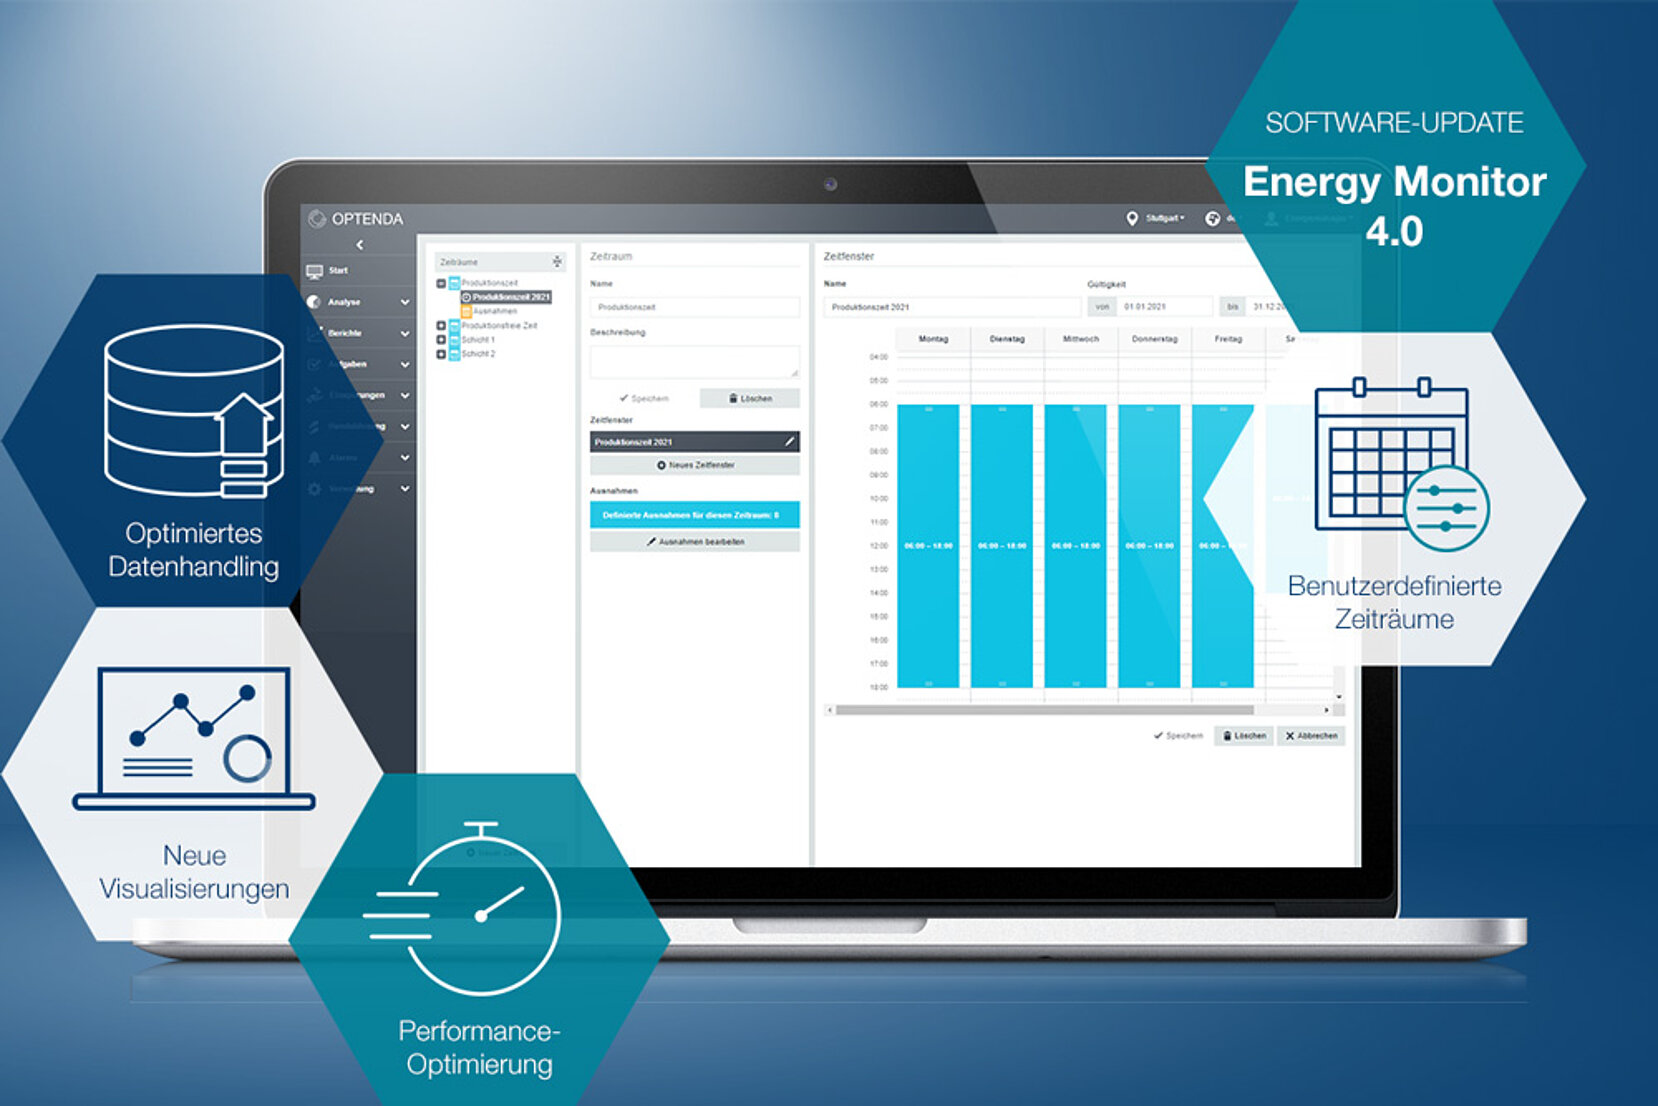 Release Update Energy Monitor 4.0 mit neuen Funktionen